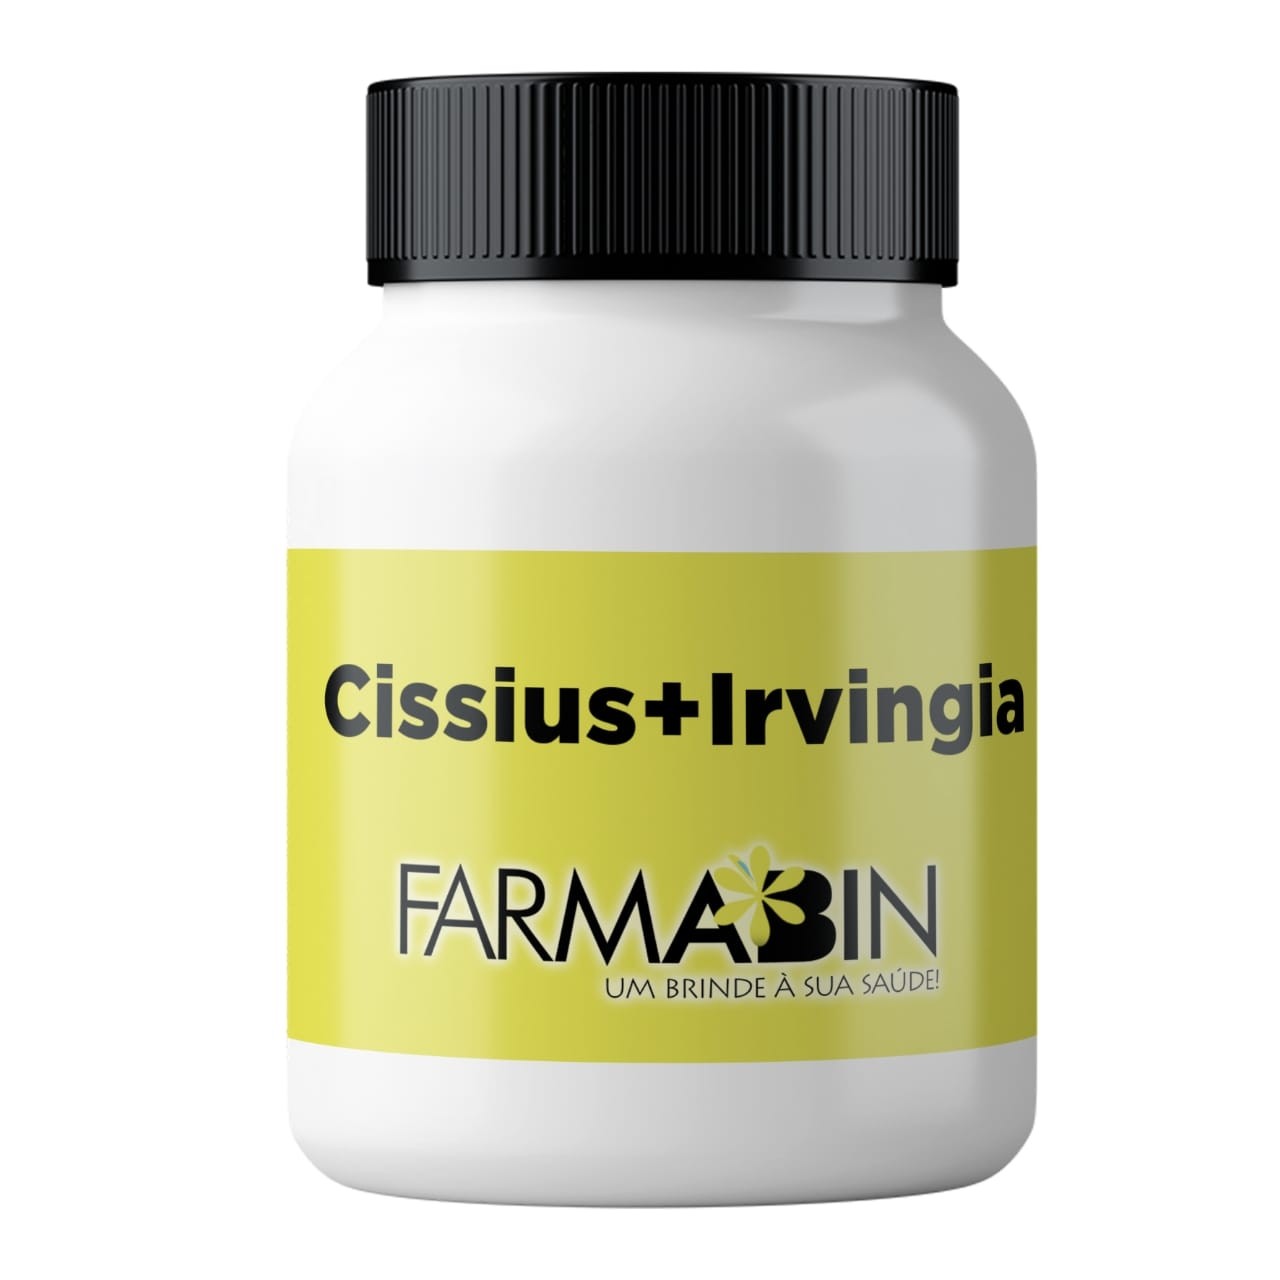 Cissus+ Irvingia